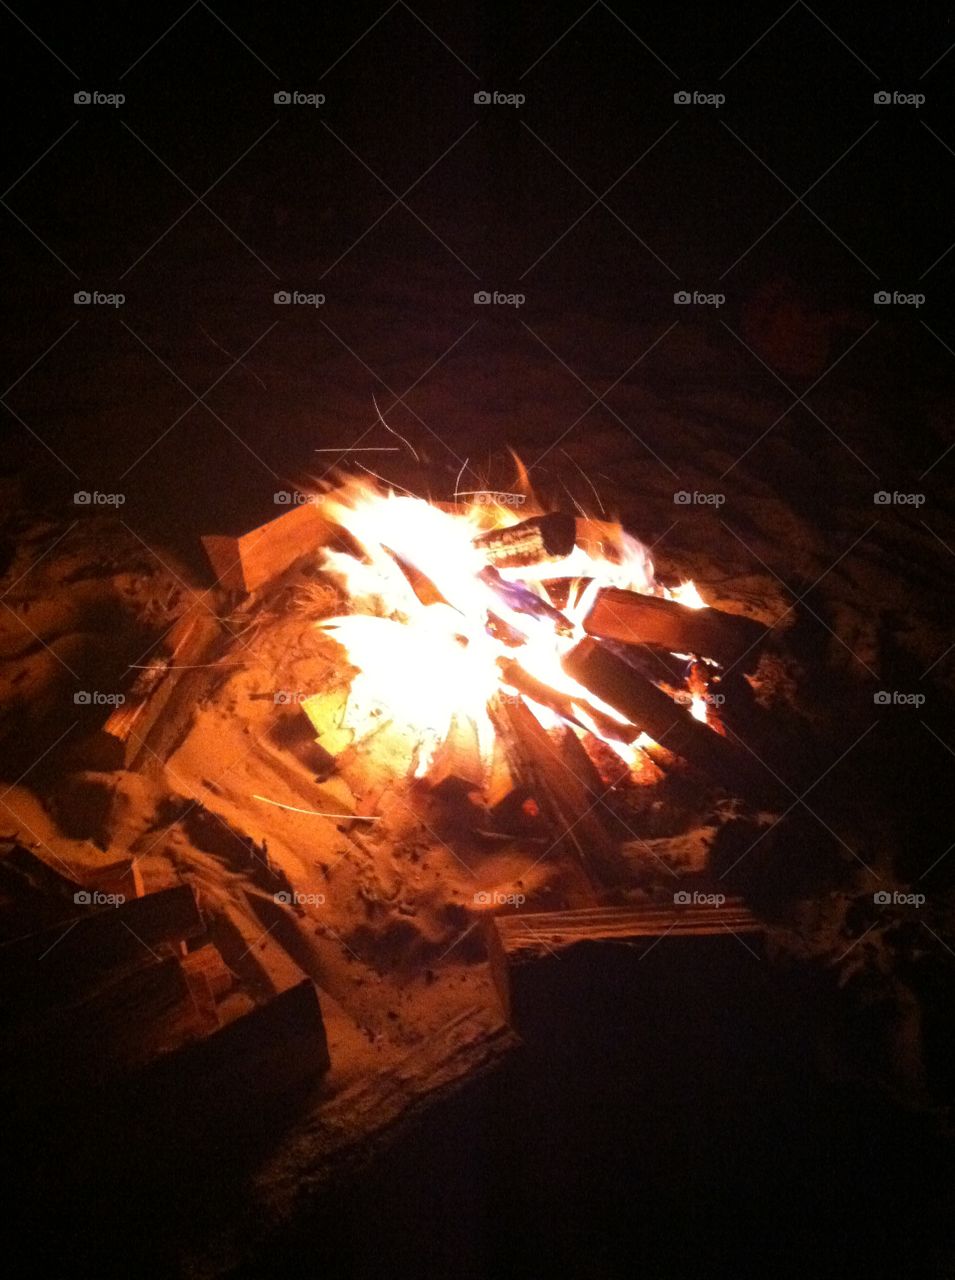 Campfire. Taken near Frankfort in Northern Michigan.